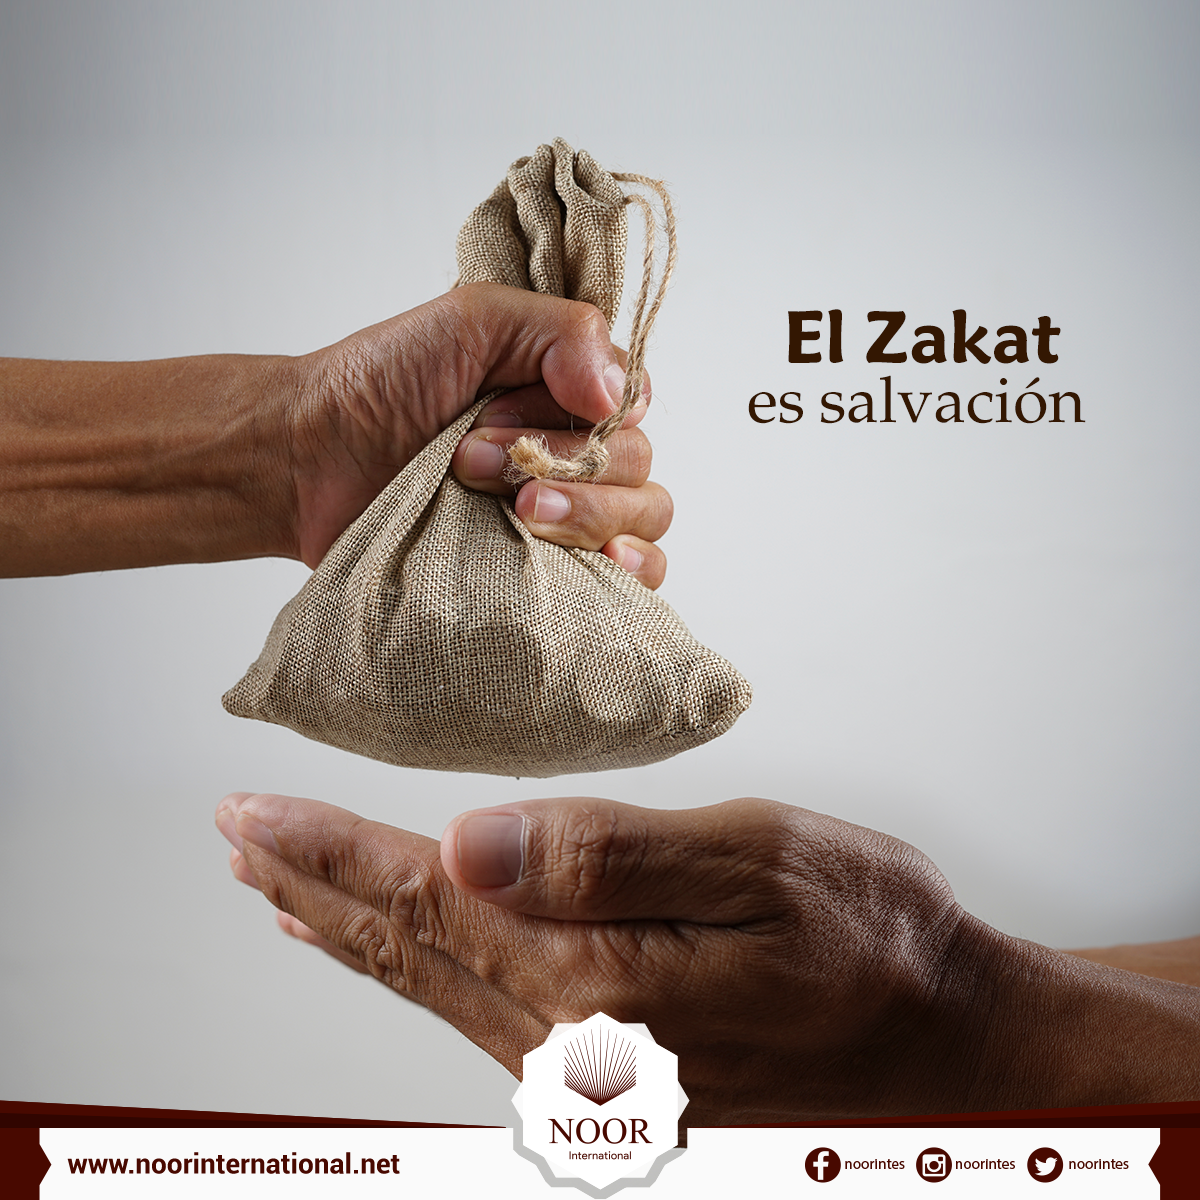 El Zakat es salvación